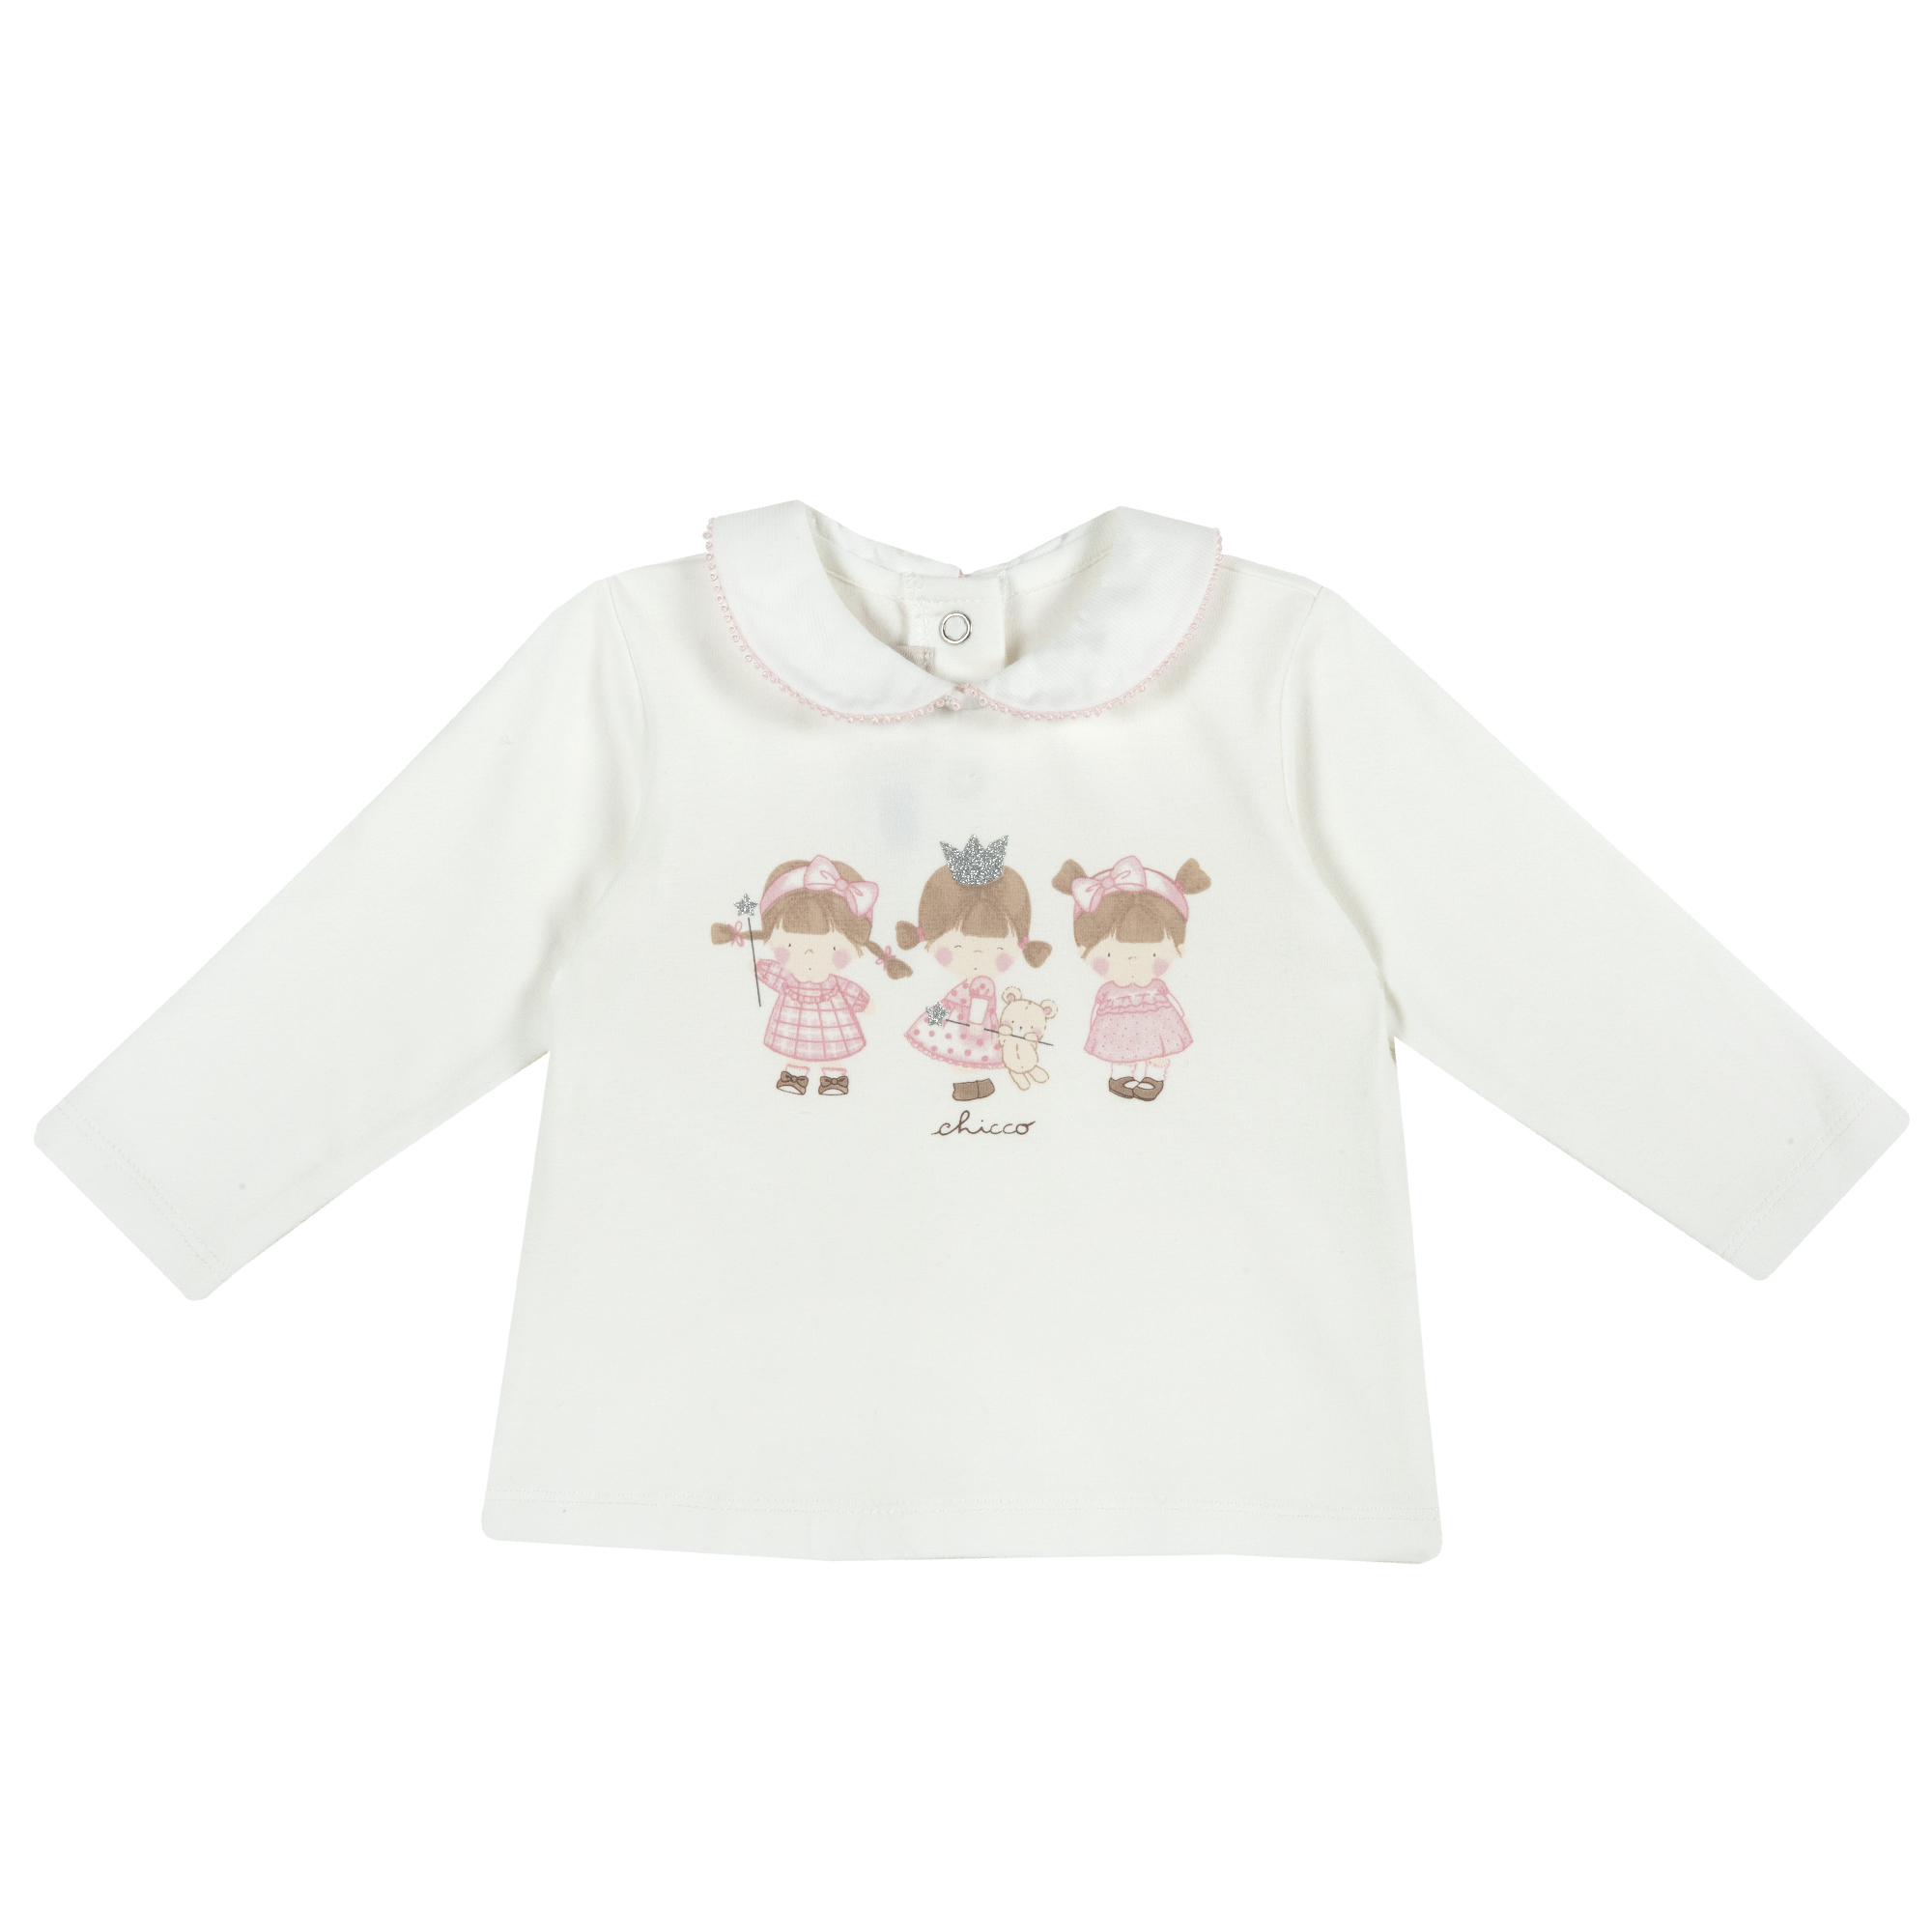 Bluza copii Chicco, inchidere in spate, alb cu model, 47275 Bluze copii